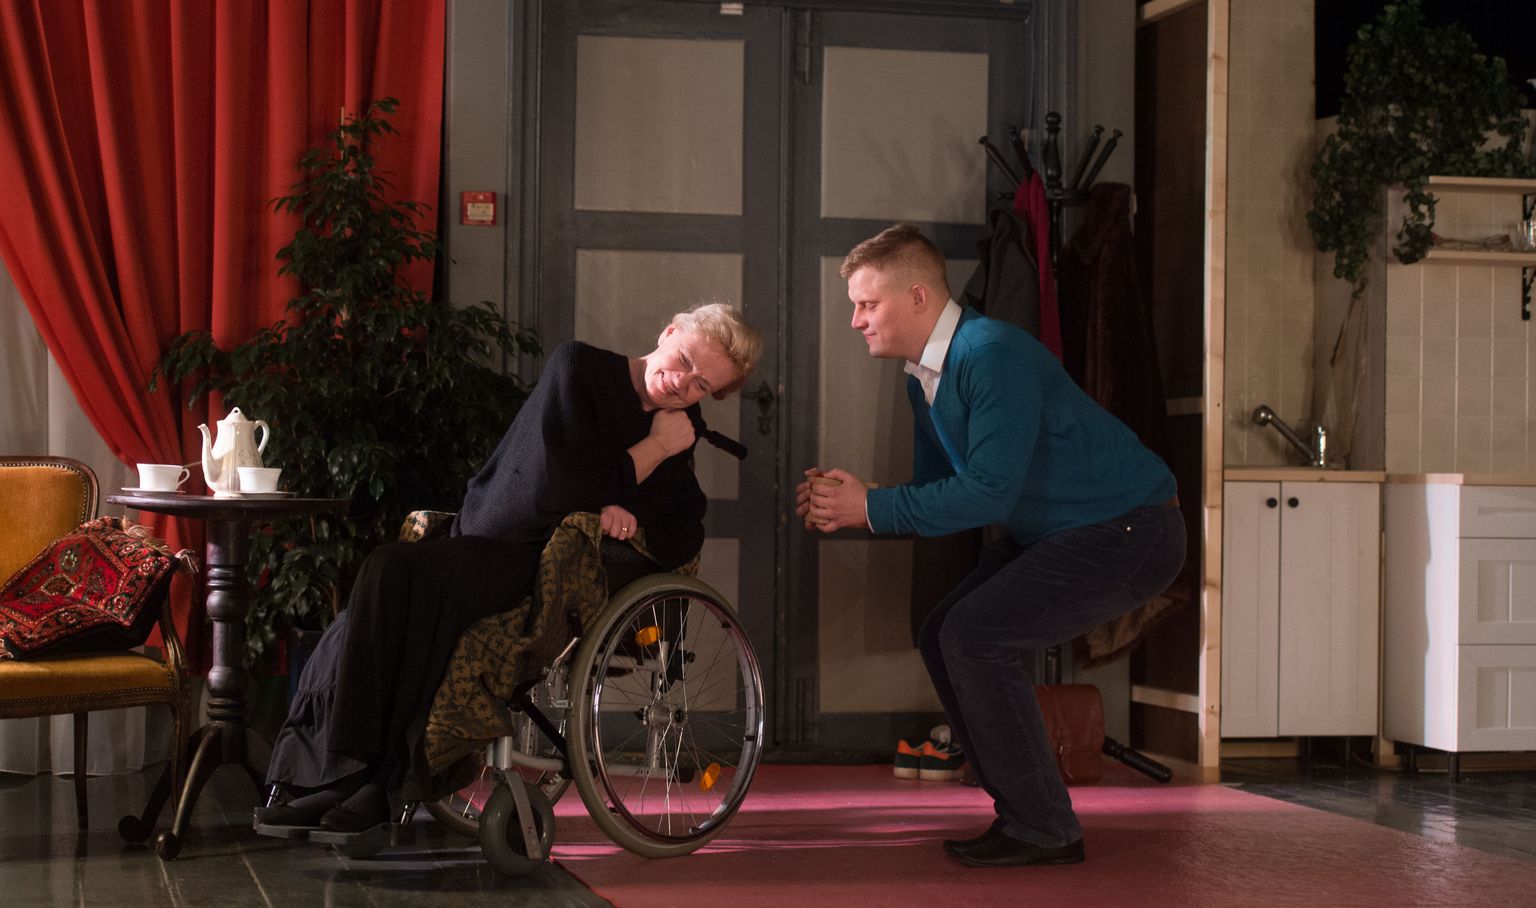 Liina Tennosaar kehastab lavastuses «Öökuninganna» endist ooperilauljat, Martin Tikk teda abistavat noort sotsiaaltöötajat. Nende rabedalt alanud suhtes tuleb ette nii mõndagi.